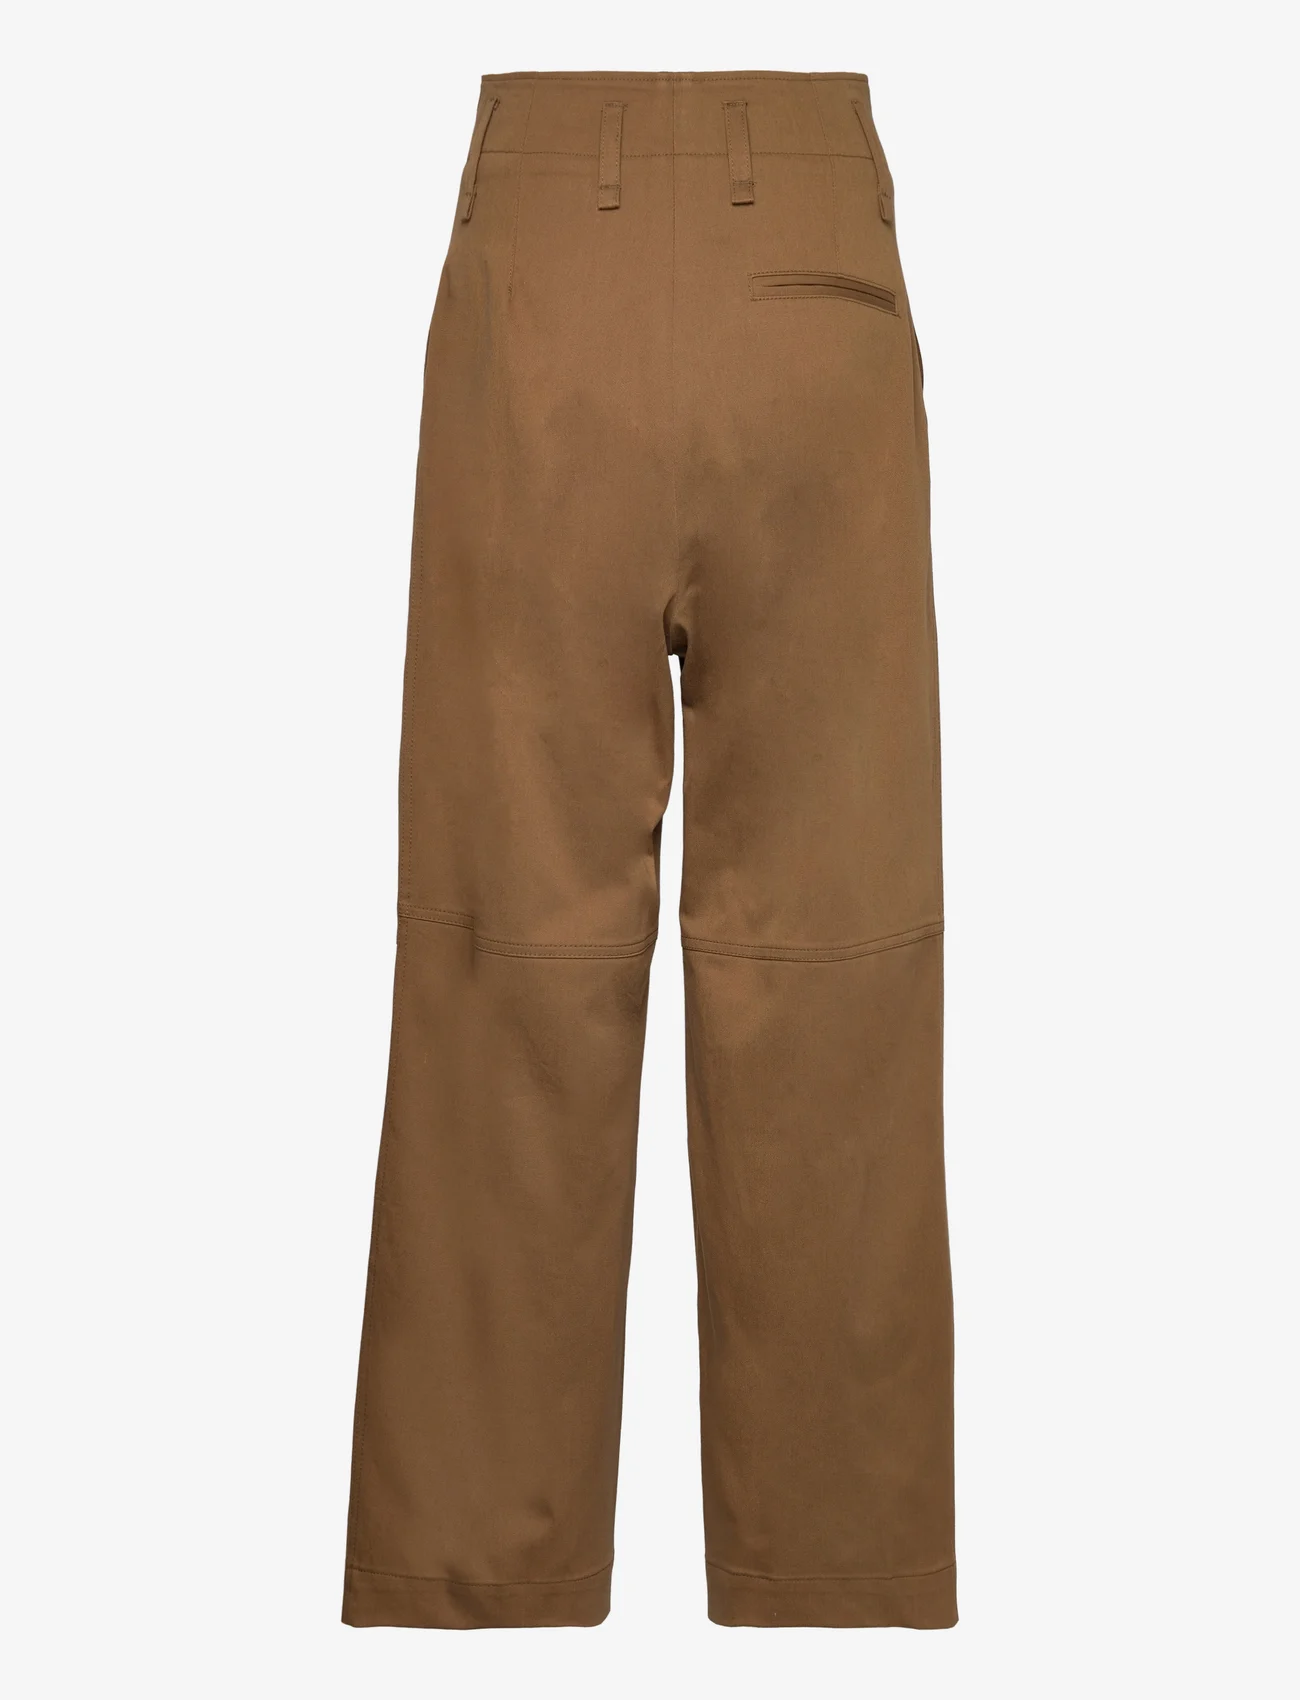 Hope - Zip-detail Trousers - leveälahkeiset housut - vintage beige - 1